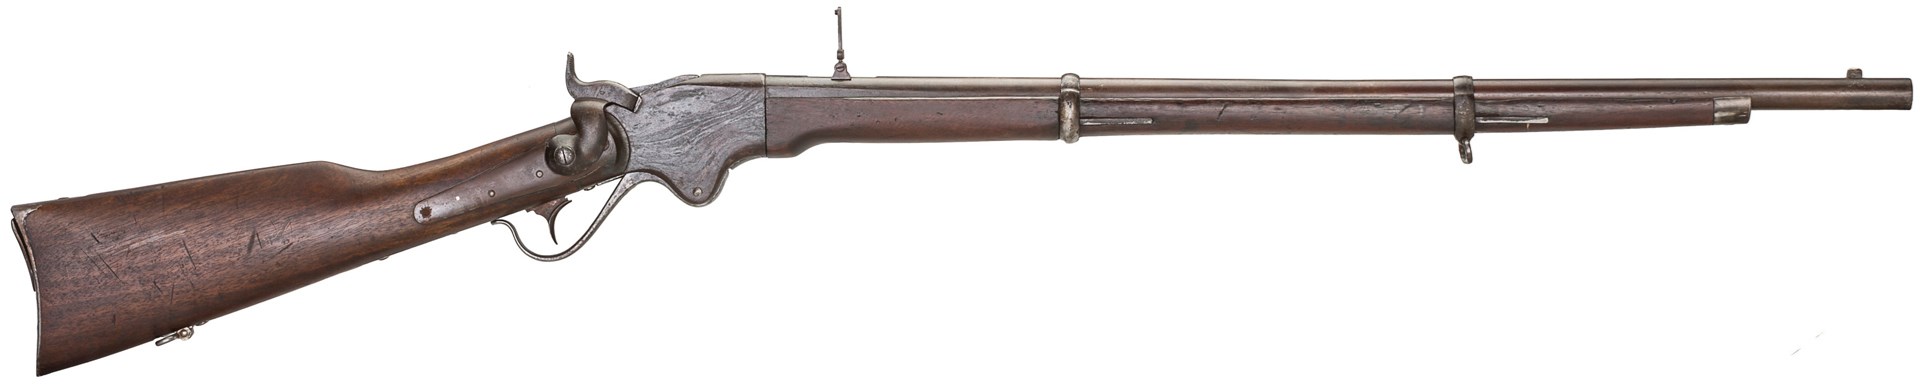 Right-side full-length view Spencer carbine Frankenspencer gun rifle wood metal historical old vintage